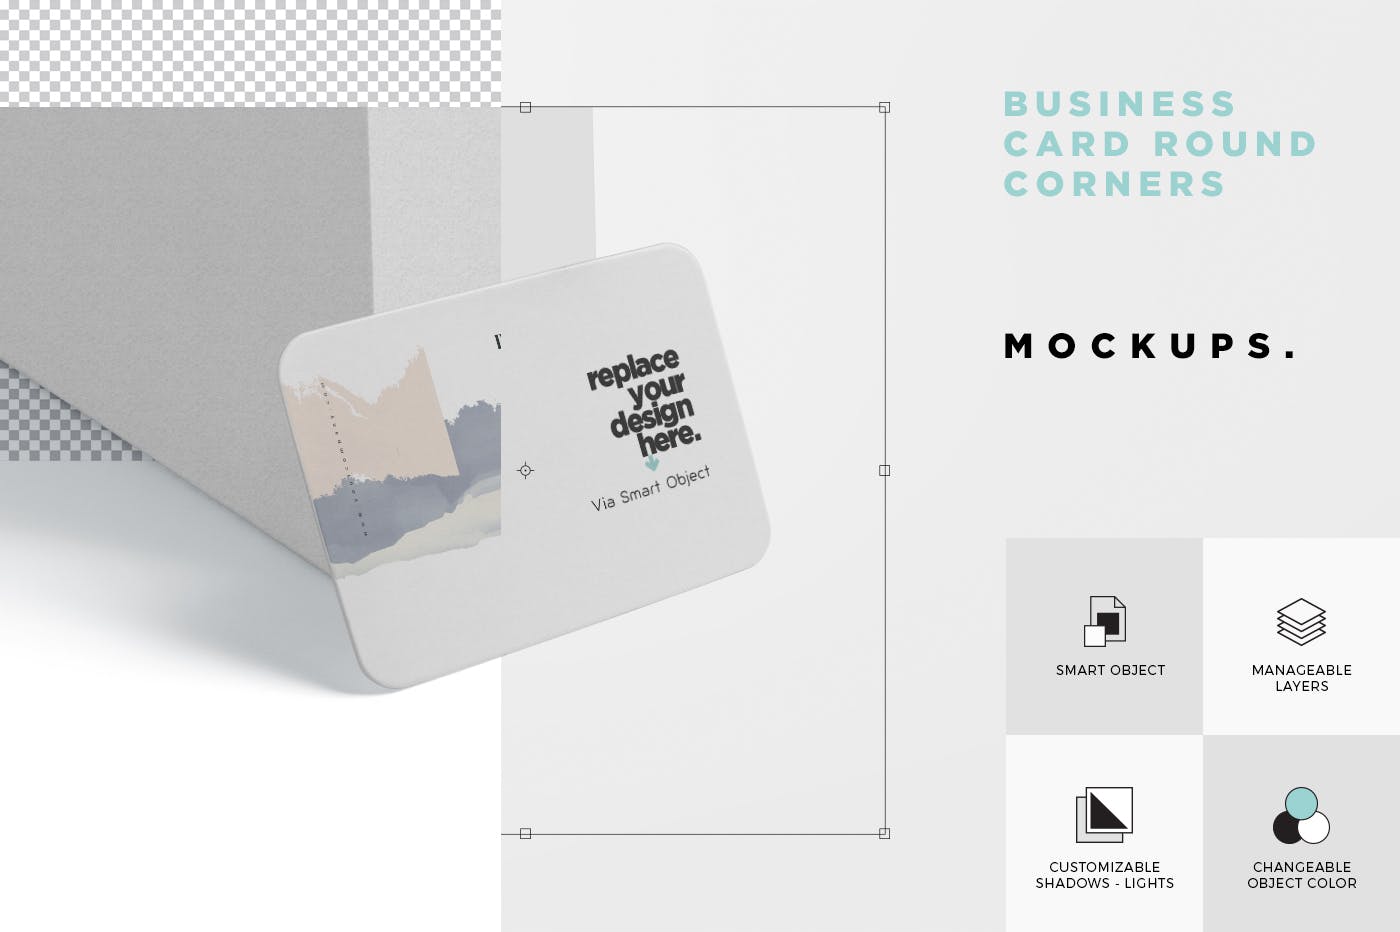 圆角名片设计桌面摆放效果图样机模板 Business Card Mockup Round Corners插图(5)